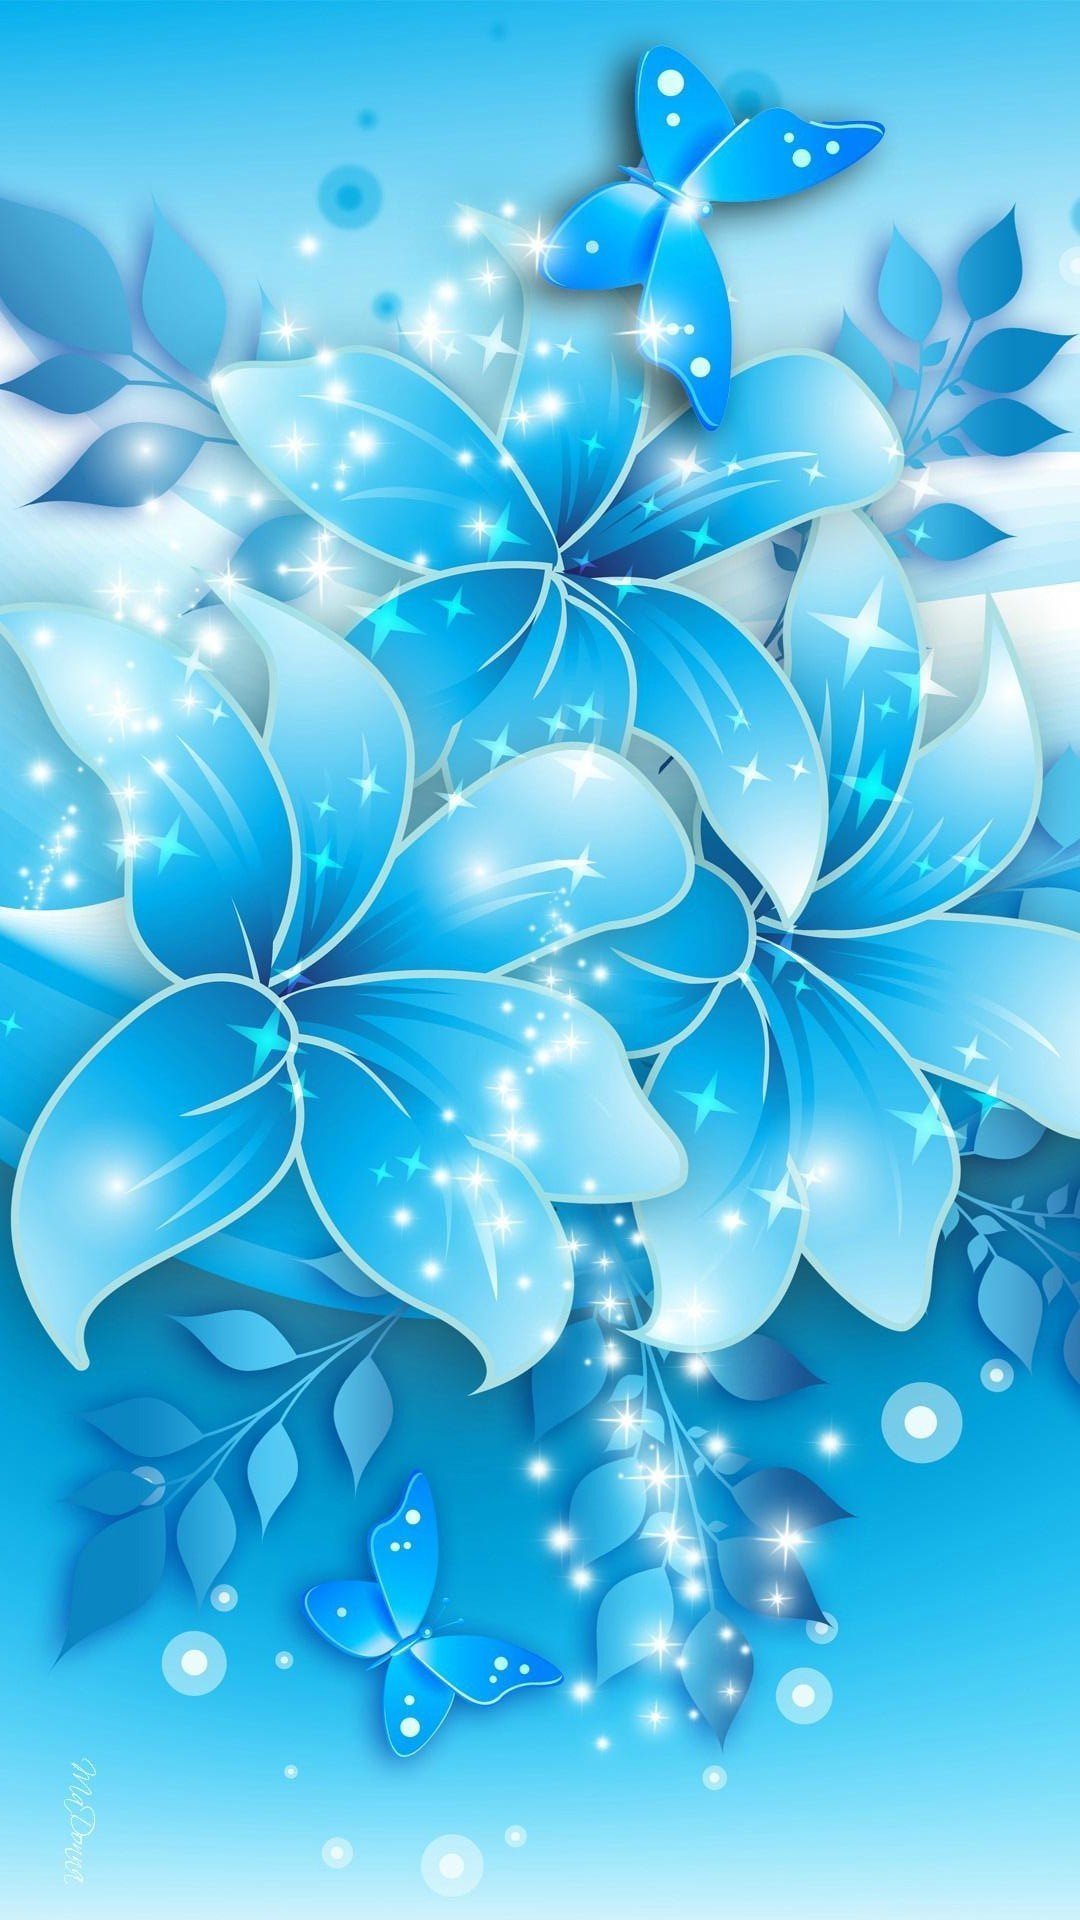 Обои на телефон синие цветы - 72 фото